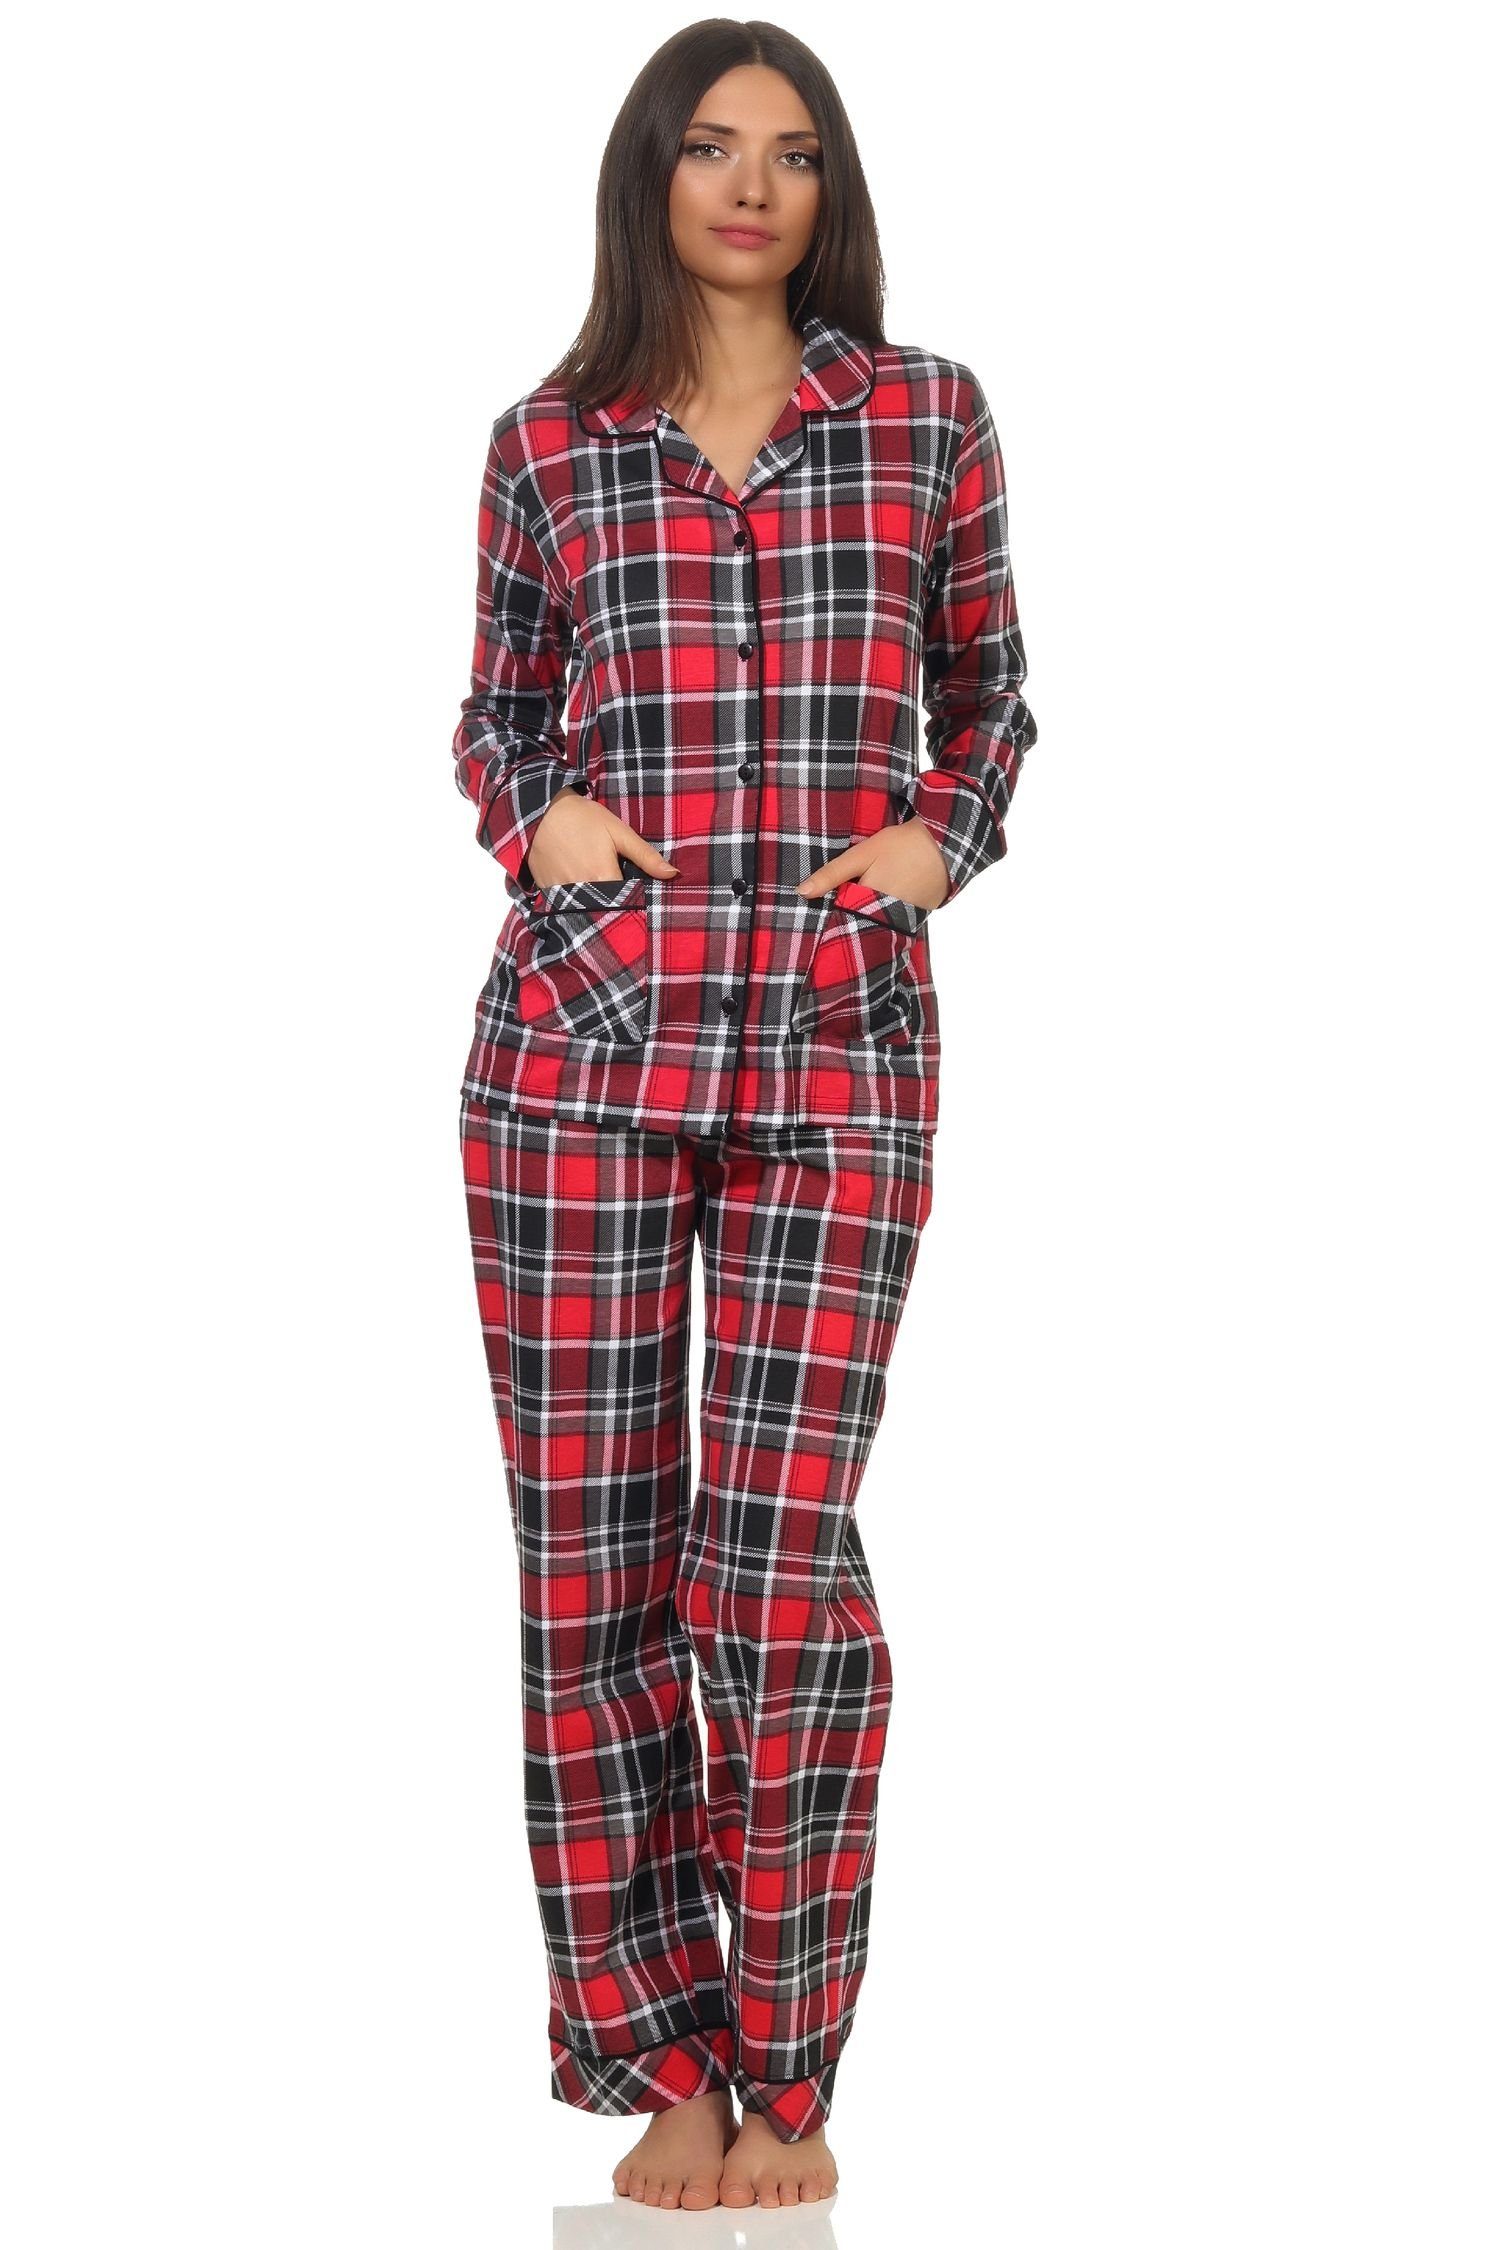 Karo Optik in Jersey Pyjama Damen Normann Single zum durchknöpfen Qualität in Pyjama